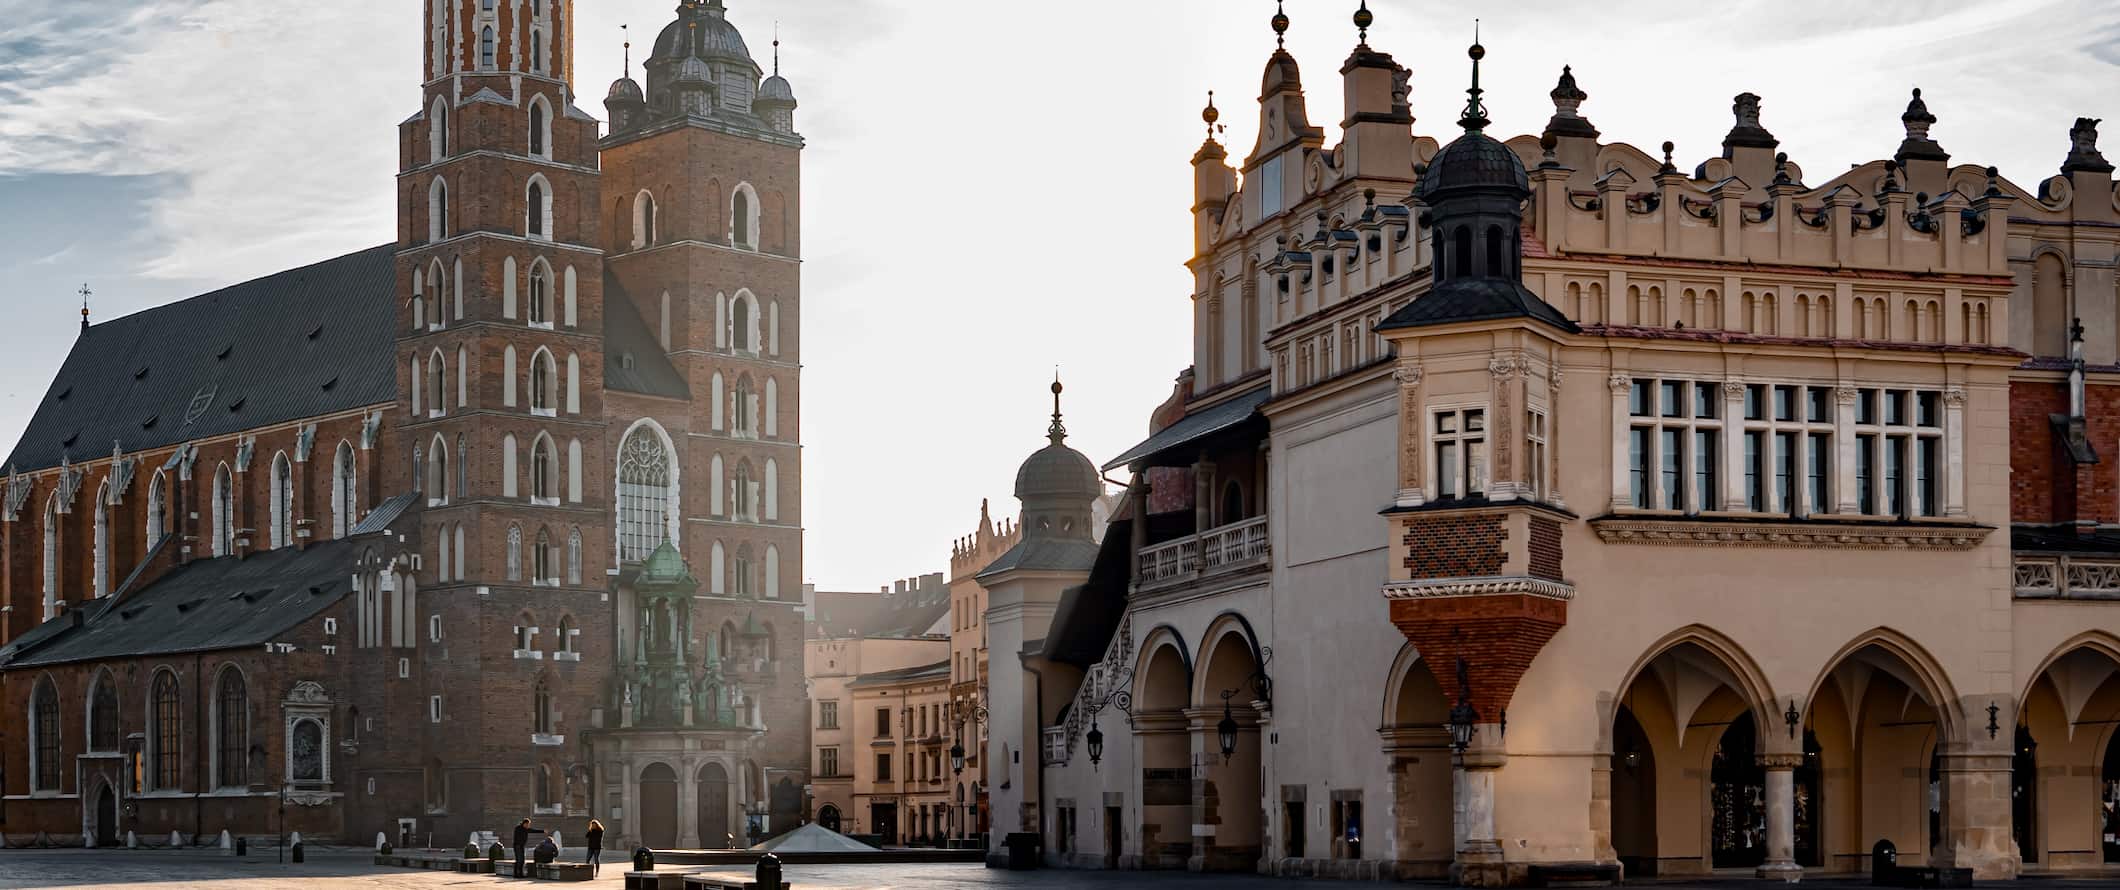 Edifícios históricos perto da antiga cidade de Cracóvia, Polônia